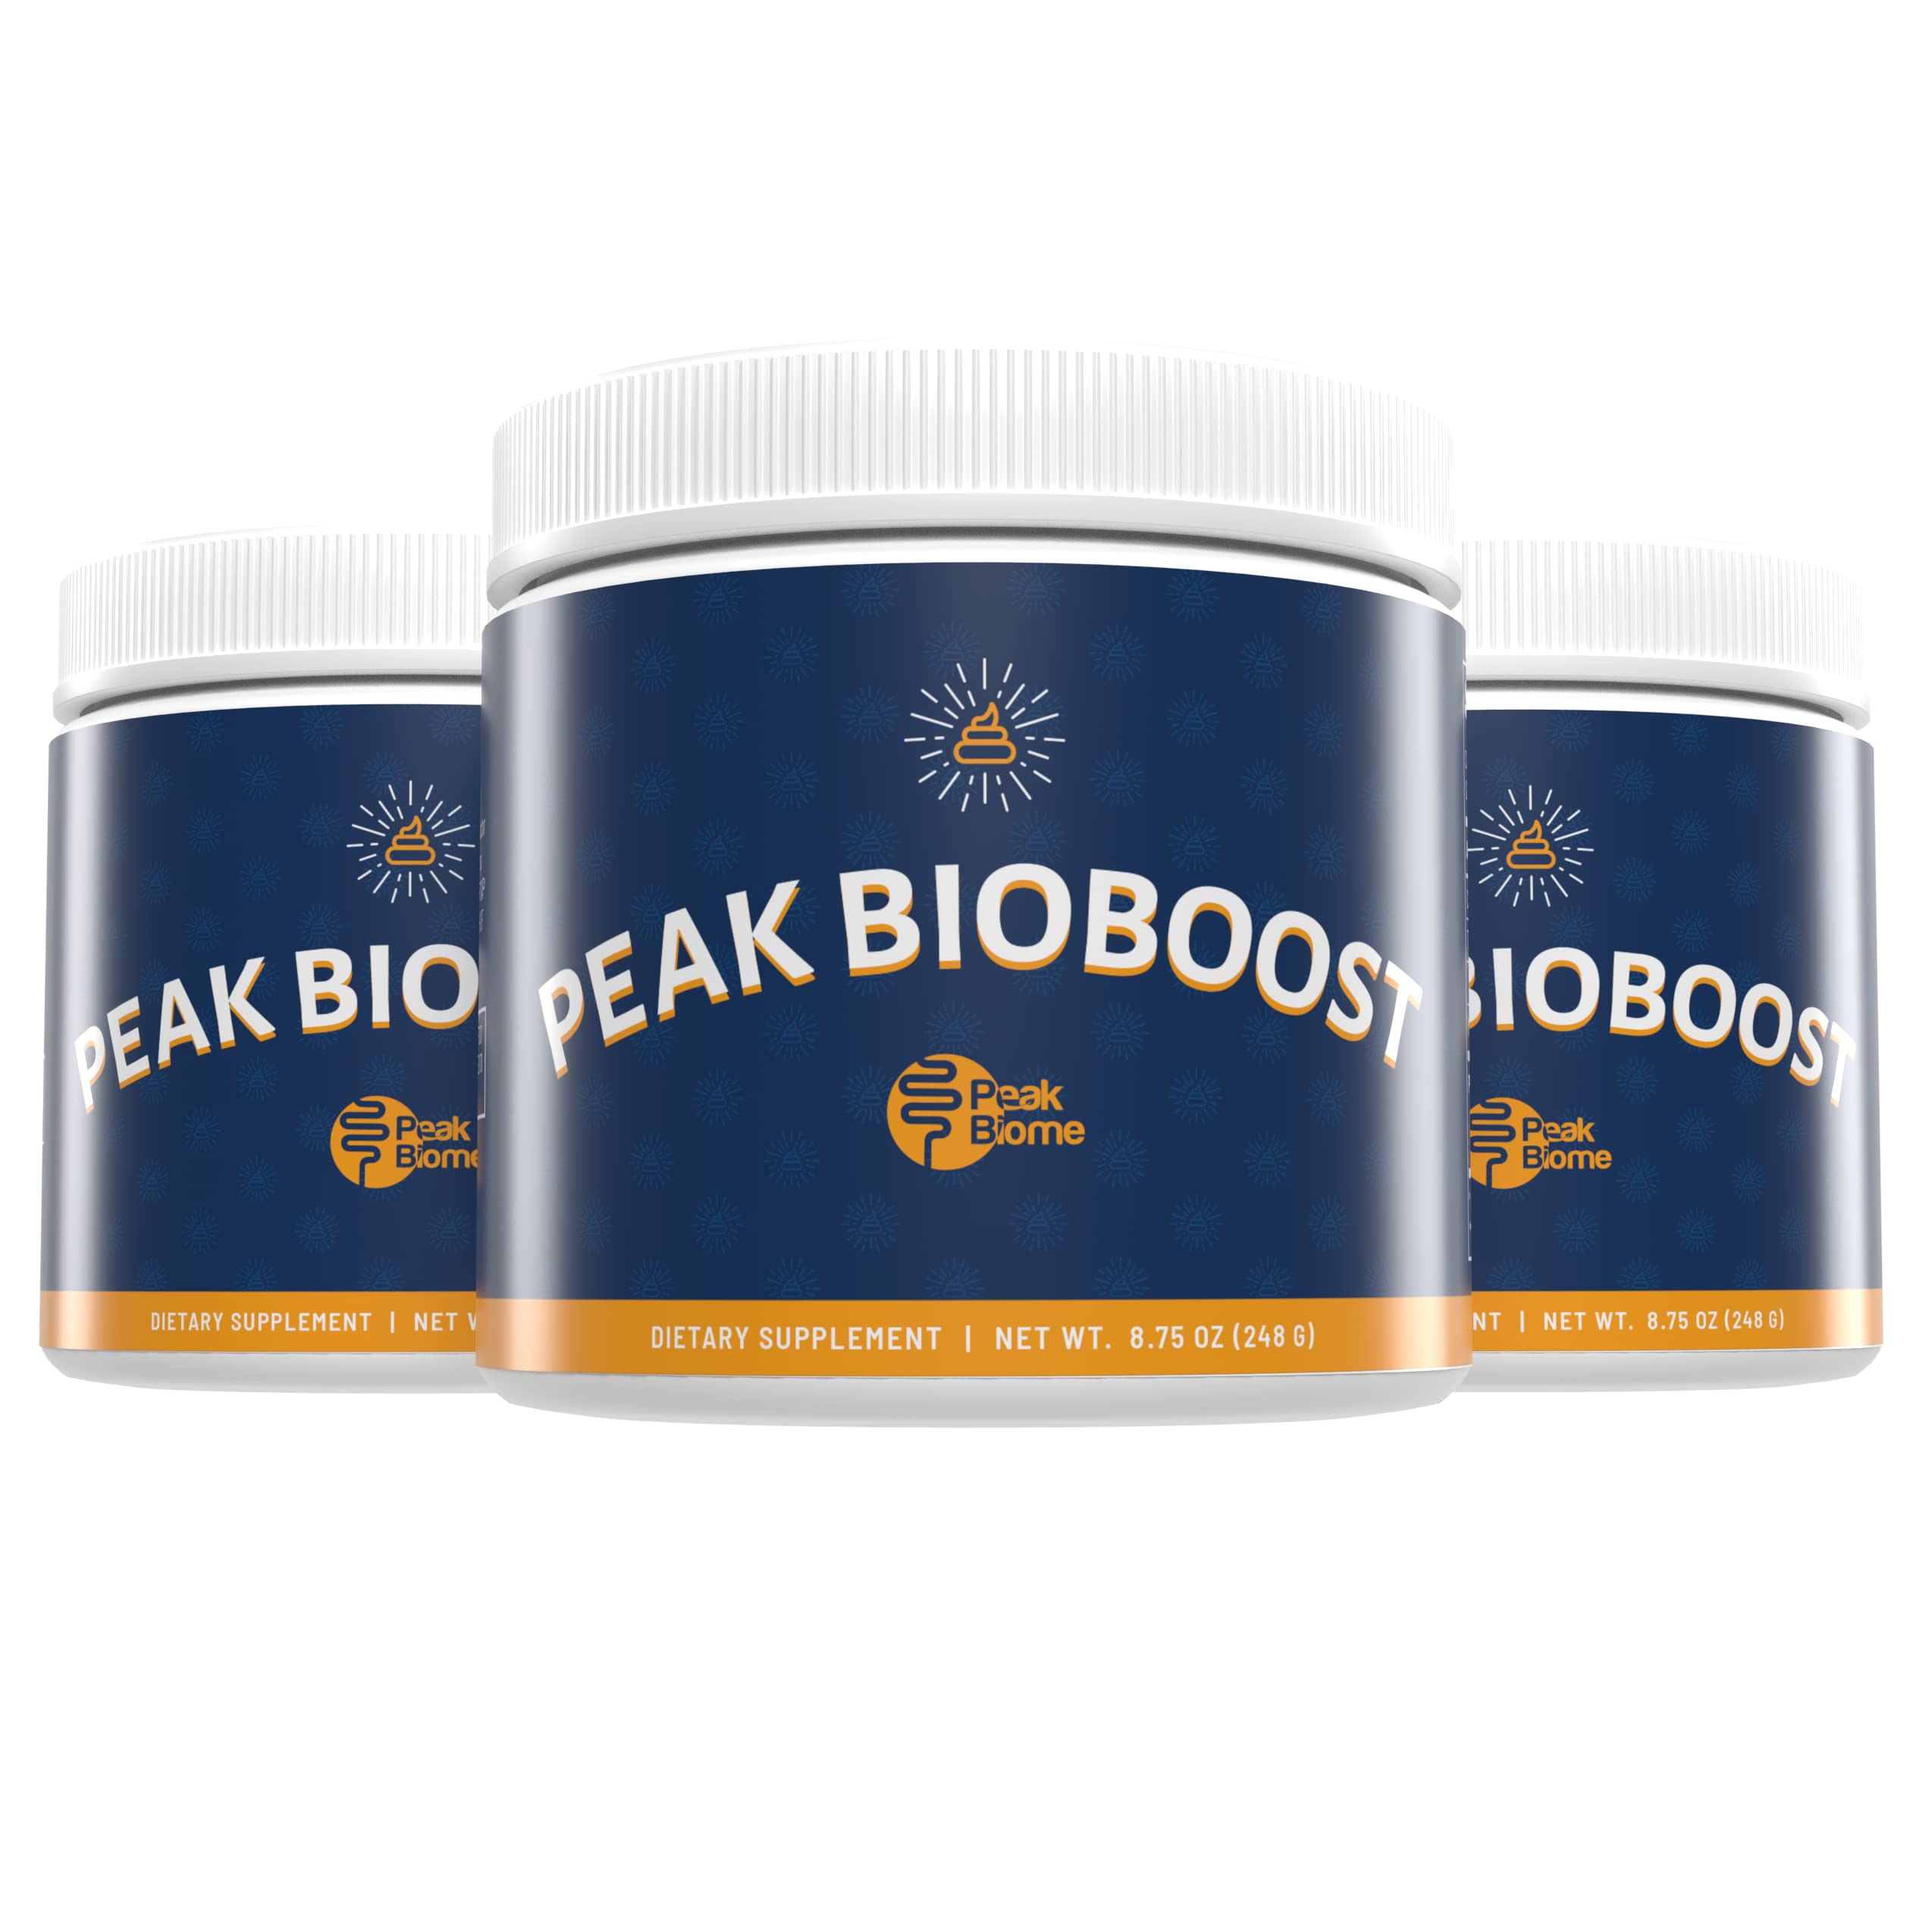 where can i buy peak bioboost